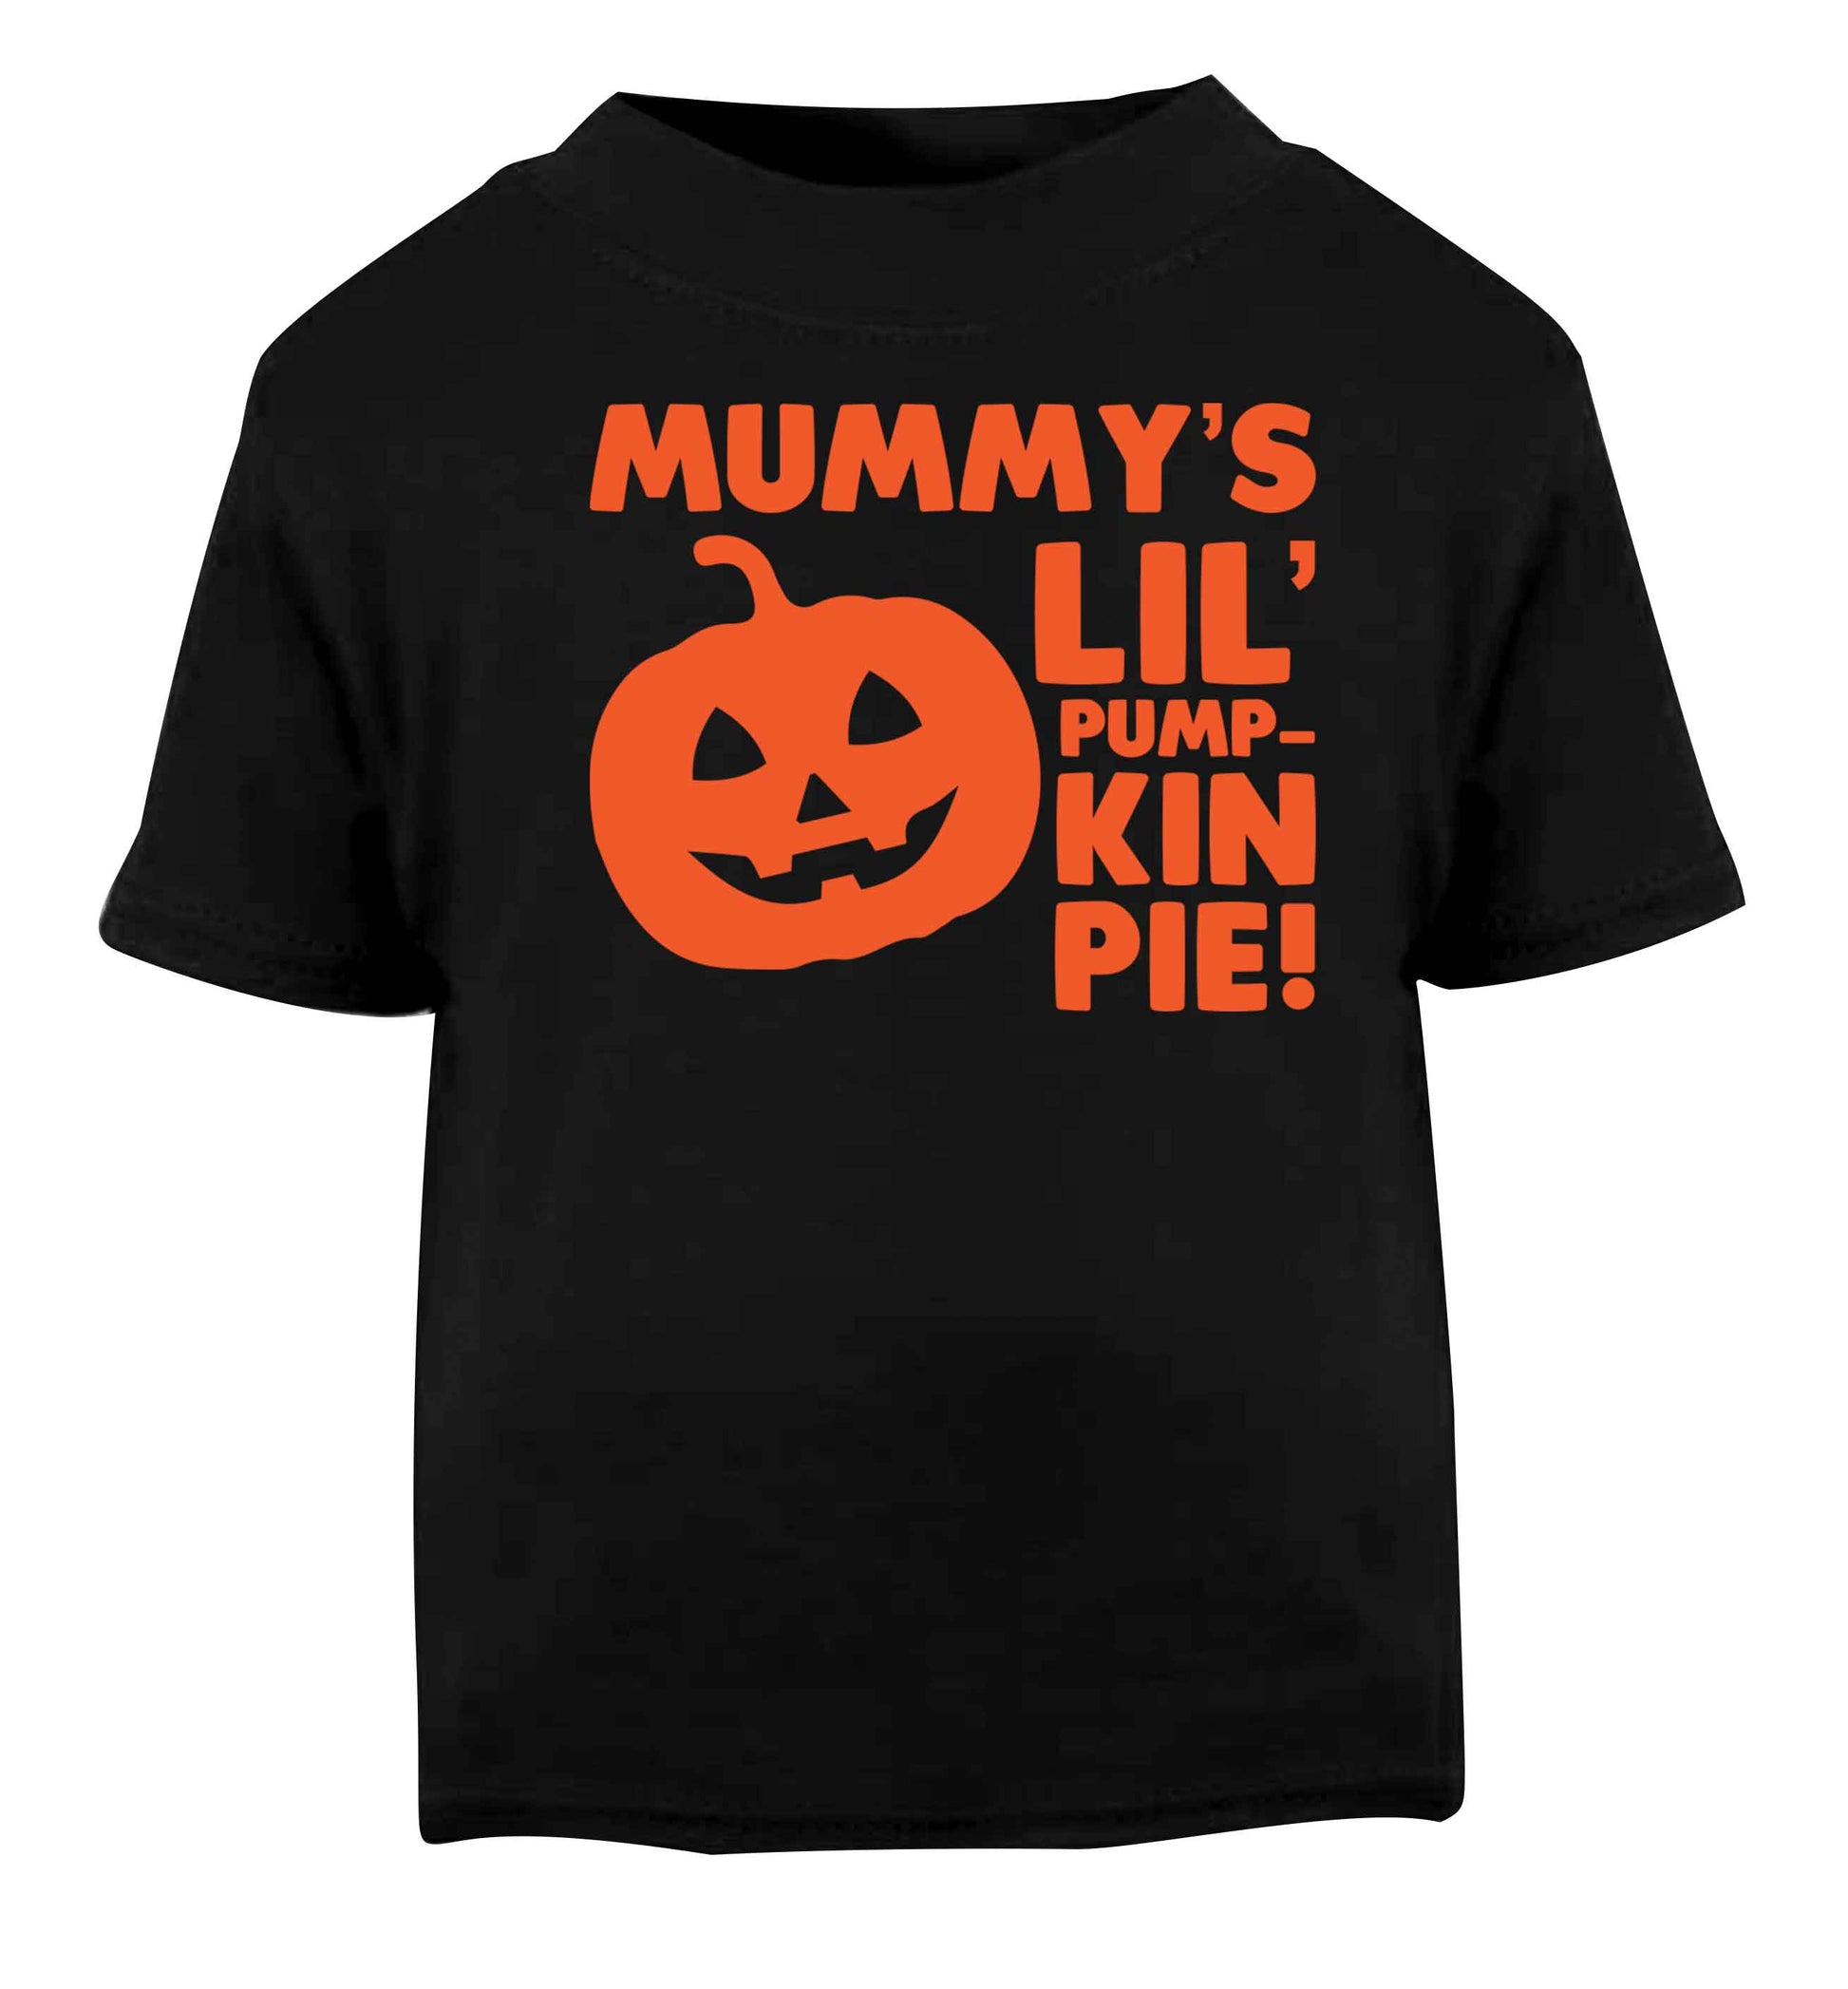 Mummy's lil' pumpkin pie Black baby toddler Tshirt 2 years